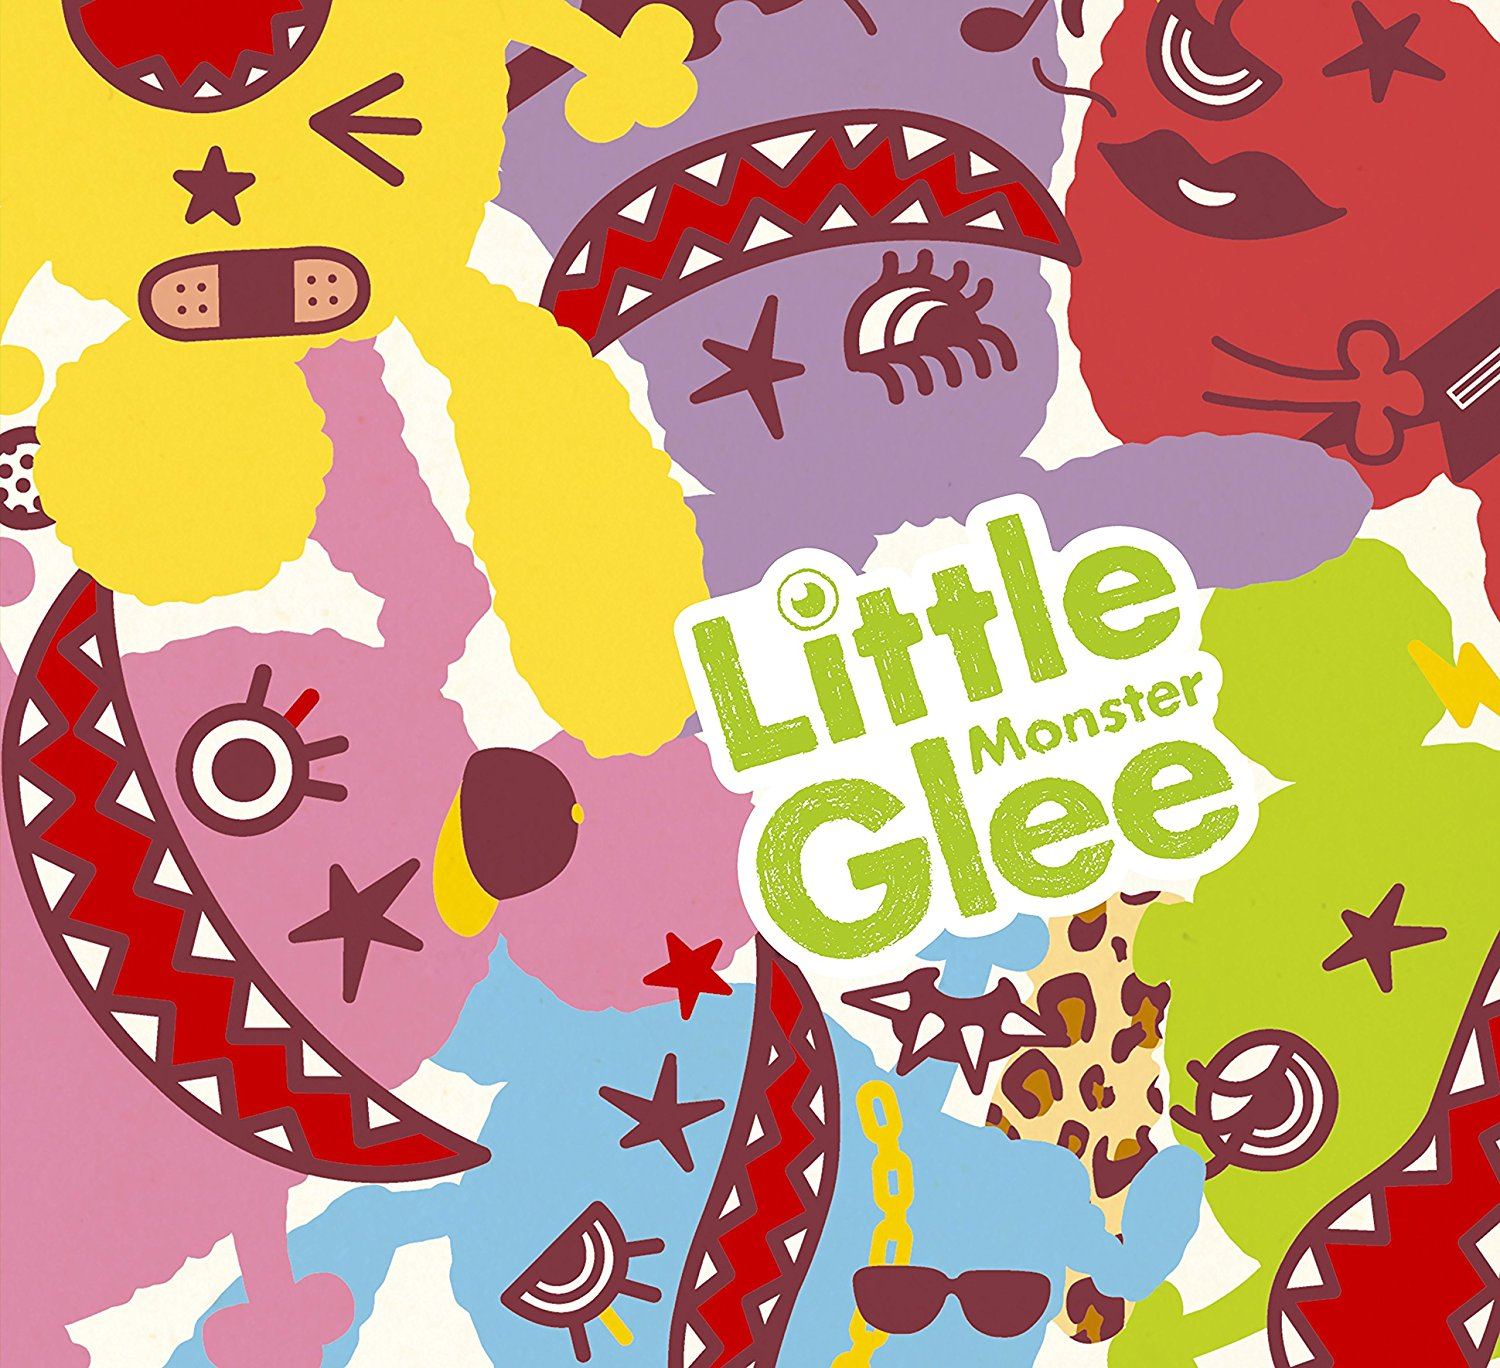 J Pop Little Glee Monster Little Glee Monster